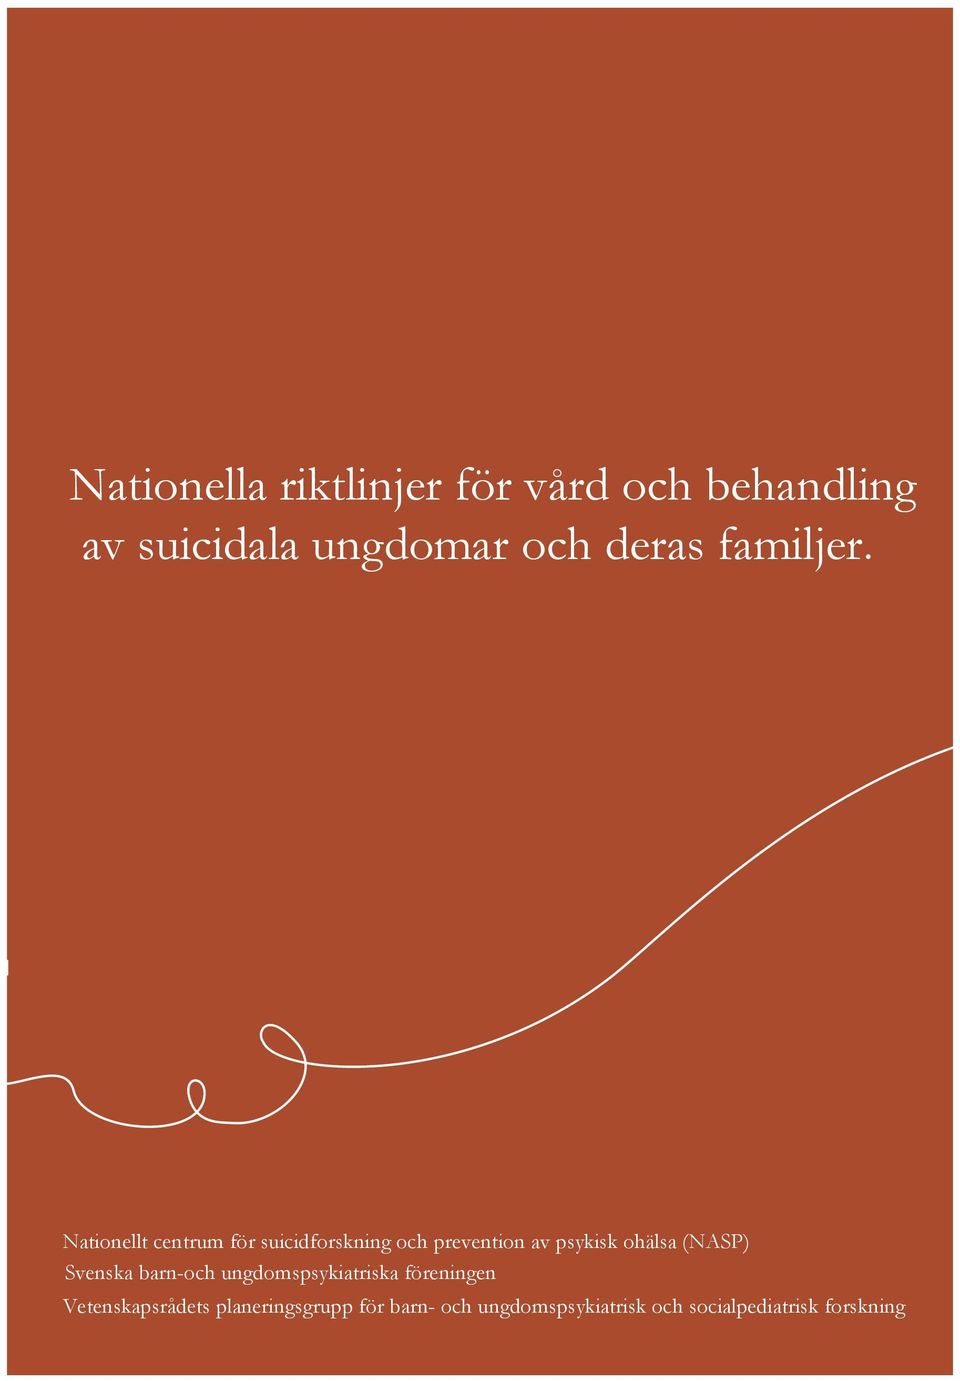 Nationellt centrum för suicidforskning och prevention av psykisk ohälsa